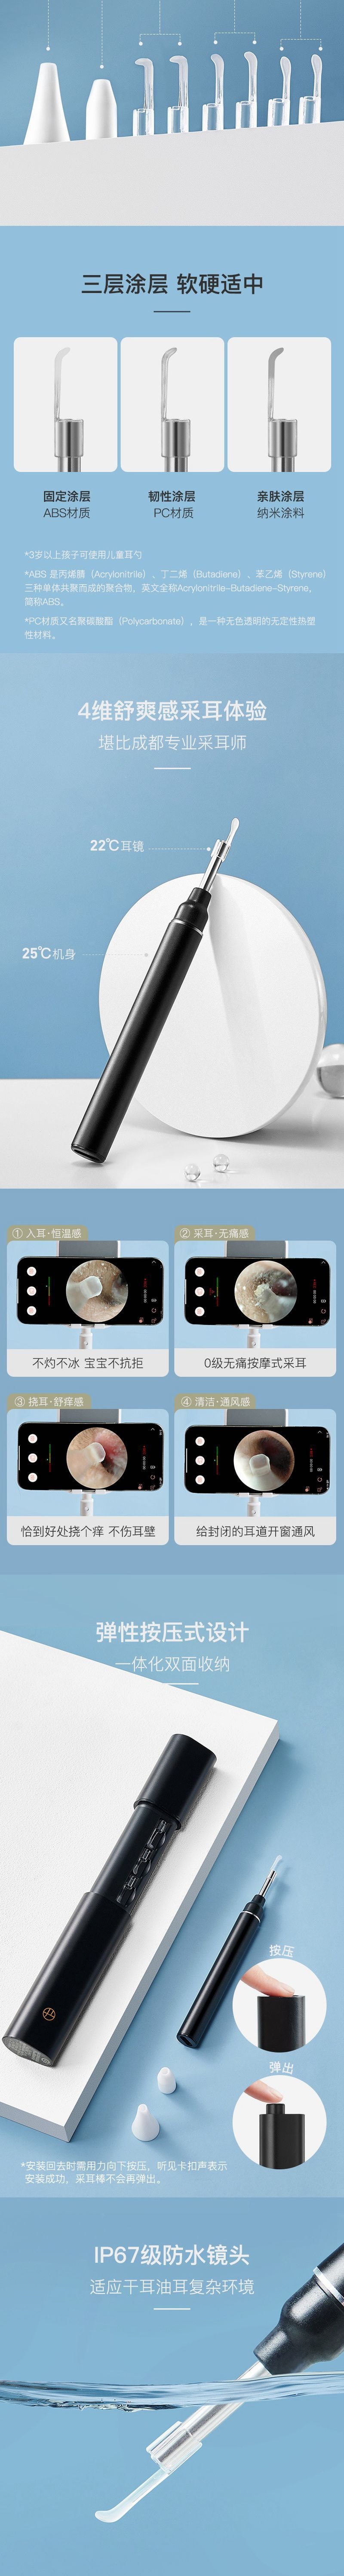 【香港DHL 5-7日达】网易智造 无线智能高清可视采耳勺 静谧黑